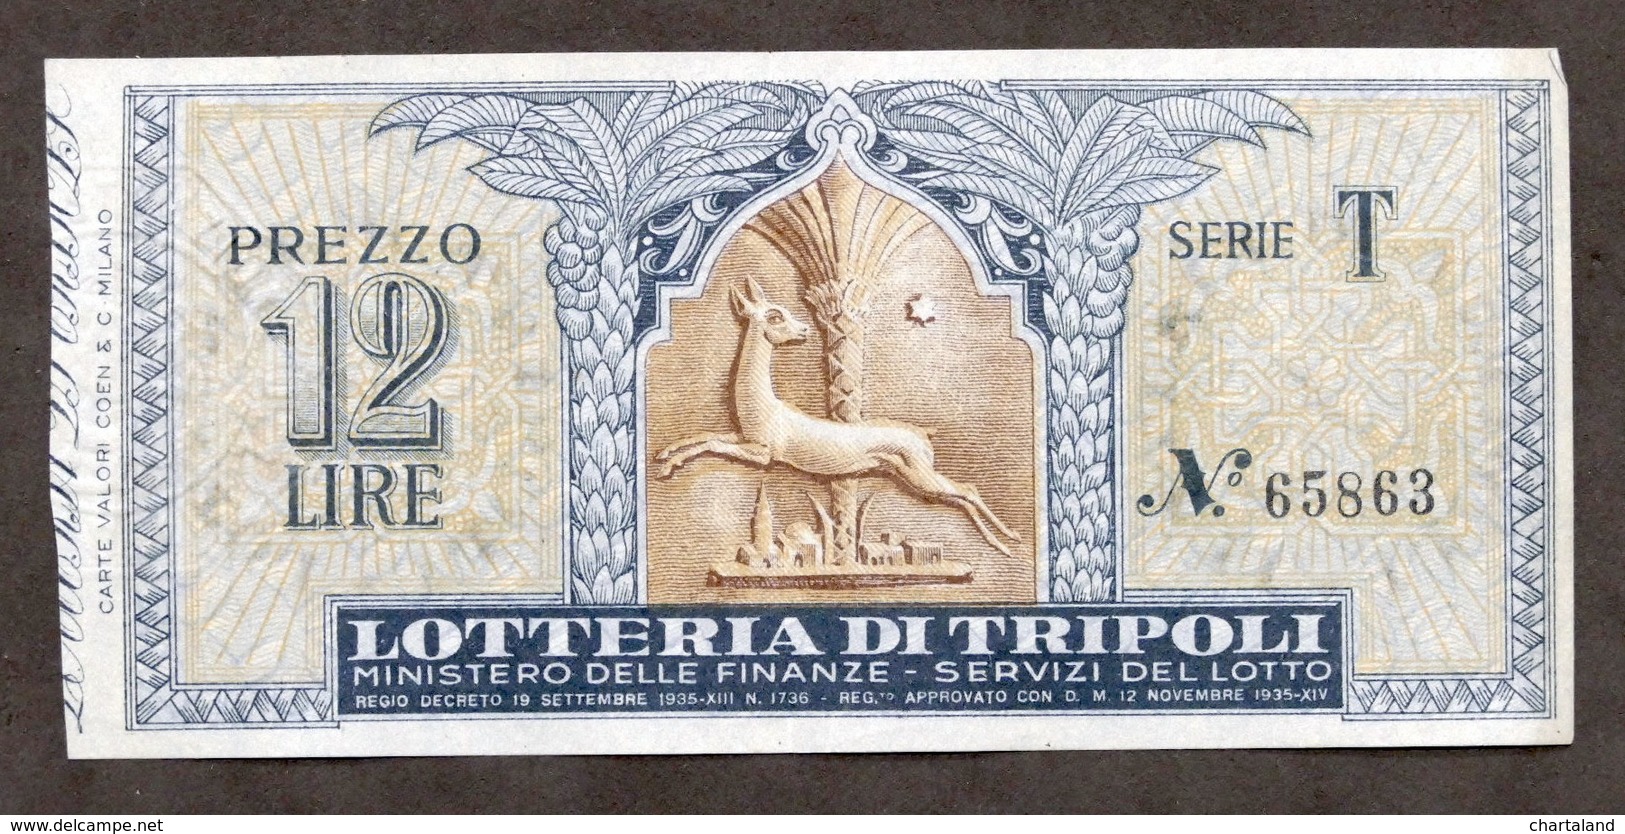 Biglietto Lotteria Di Tripoli - Serie T - Anno 1935 - Biglietti Della Lotteria